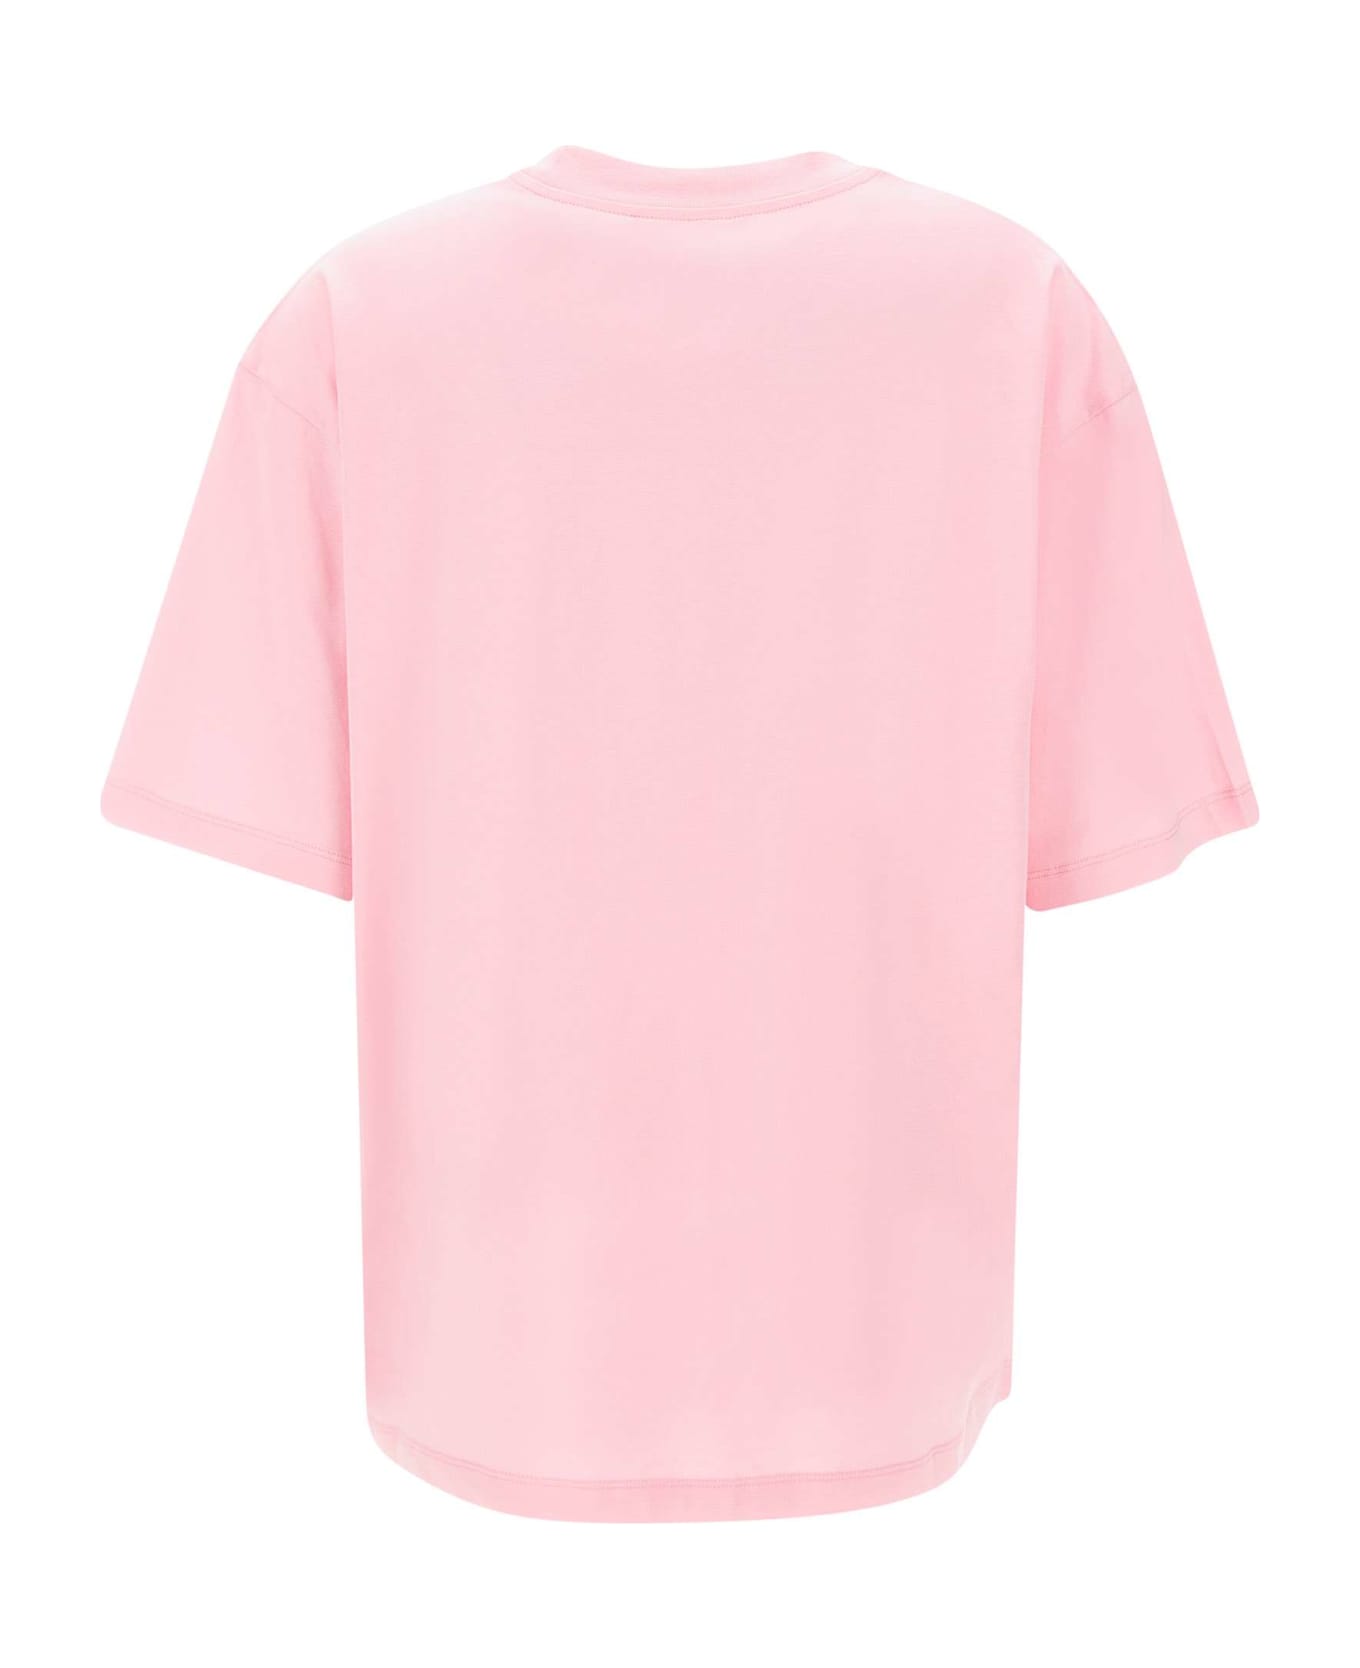 Marni Organic Cotton T-shirt - PINK